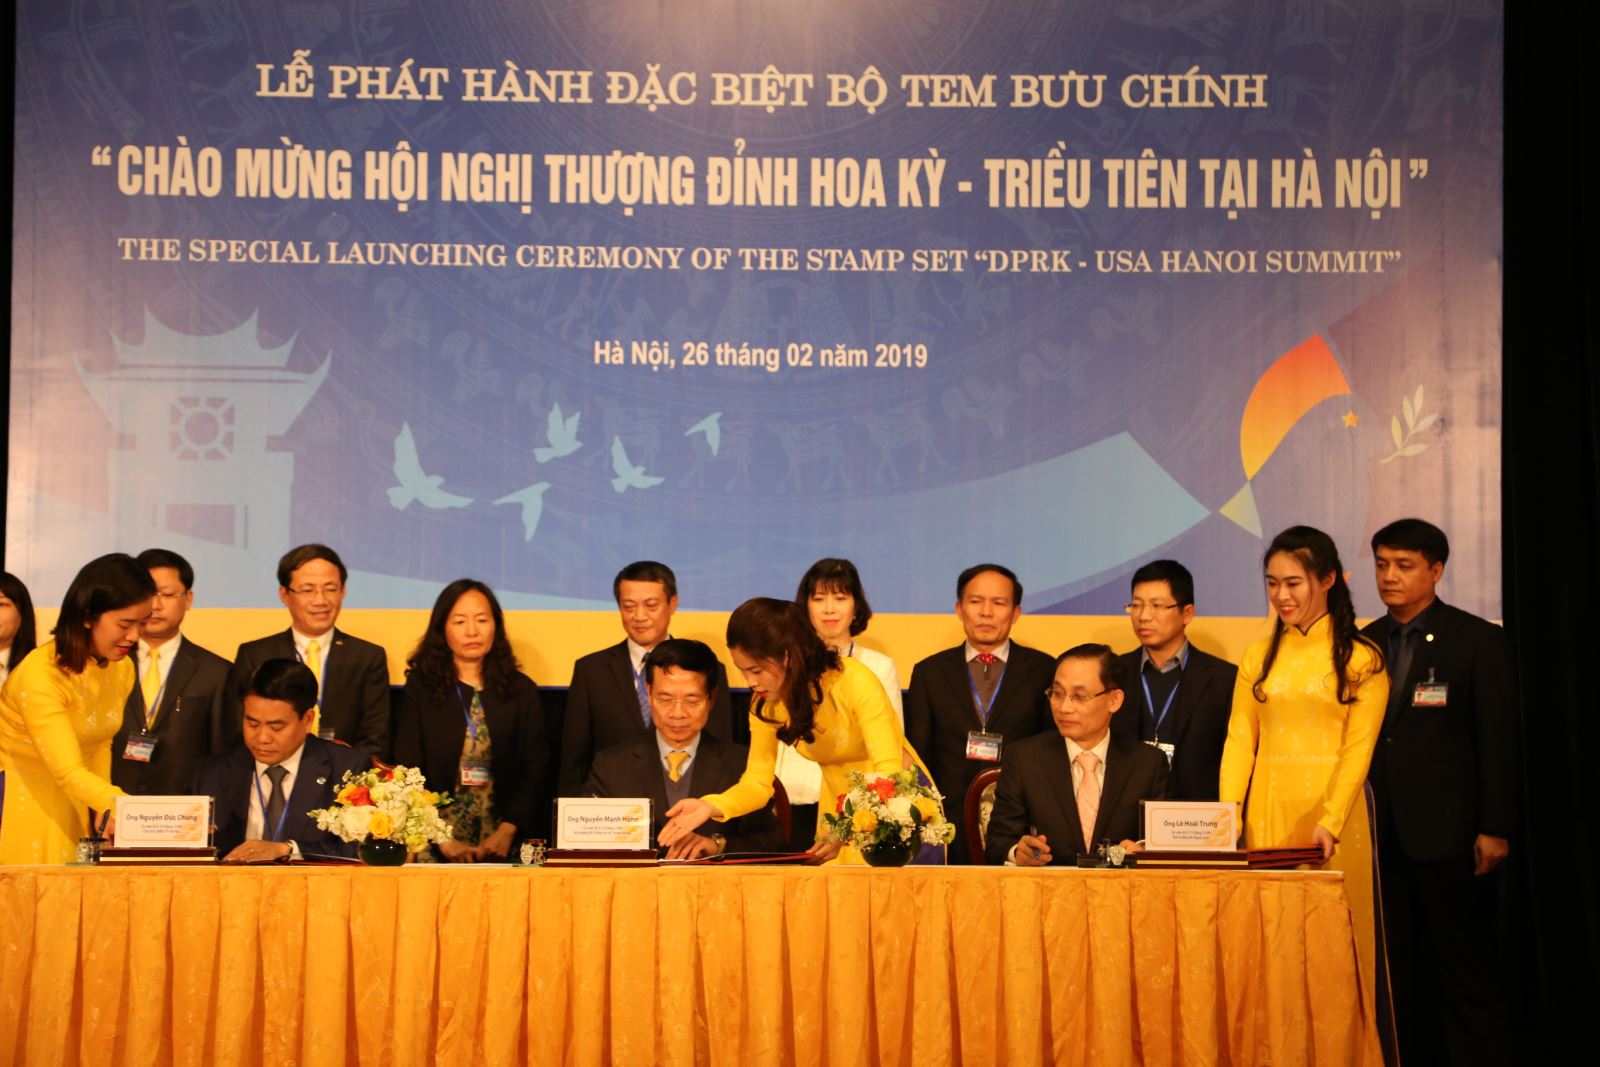 Lãnh đạo Bộ Thông tin và Truyền thông, Bộ Ngoại giao và thành phố Hà Nội ký phát hành bộ tem 